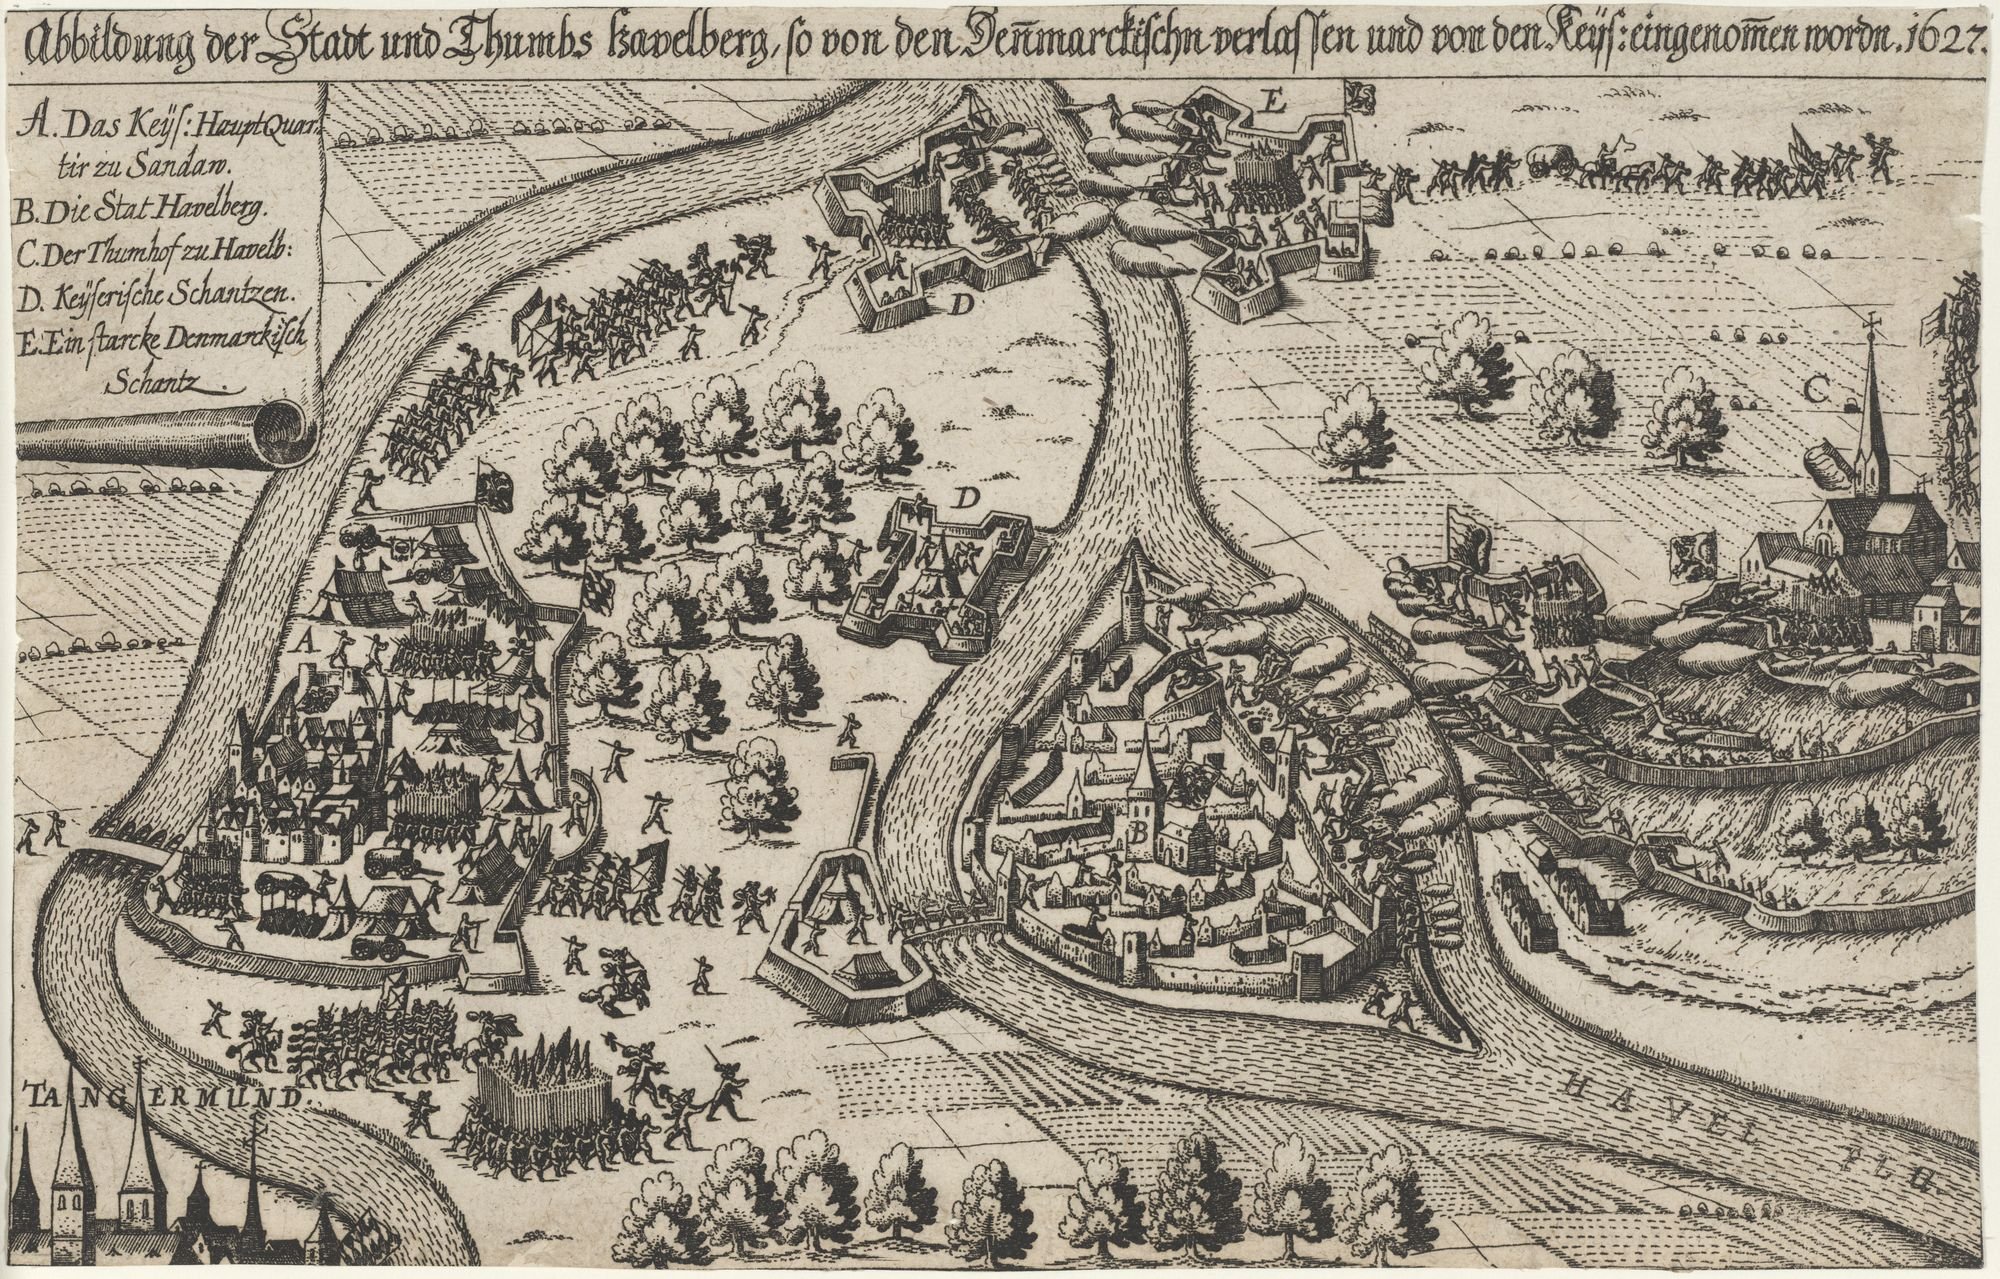 Abbildung der Stadt und Thumbs havelberg, so von den Denmarckischn verlassen und von den Keys: eingenomen wordn. 1627. (Kulturstiftung Sachsen-Anhalt Public Domain Mark)